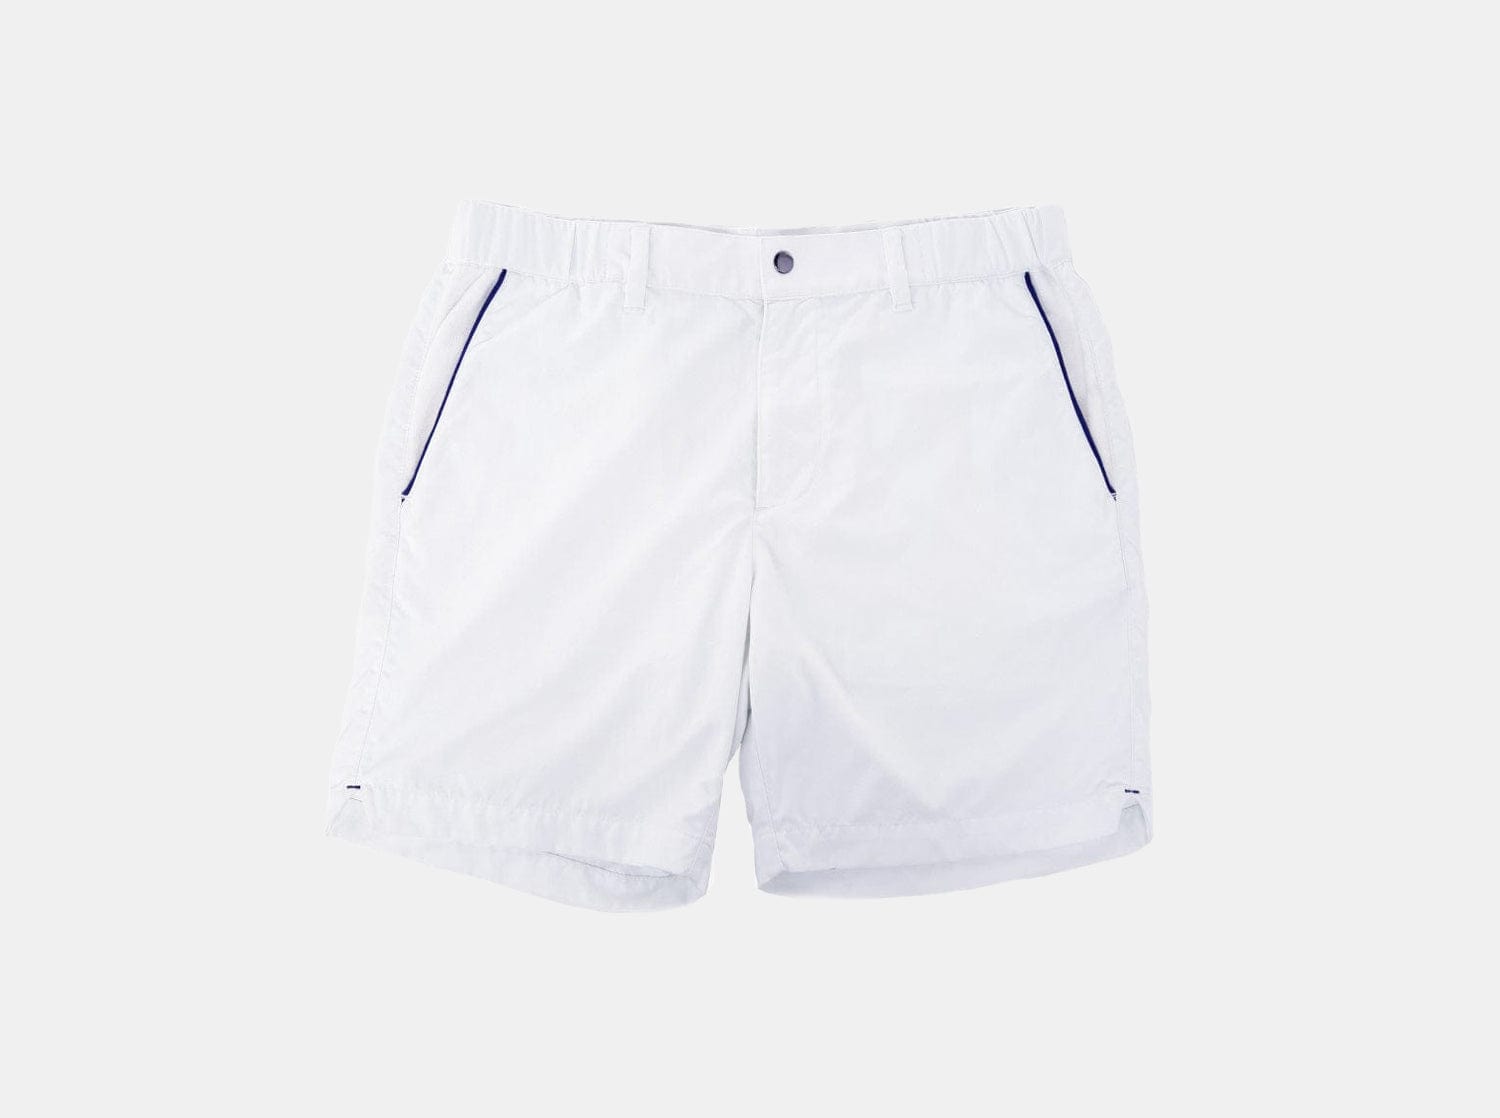 Court Shorts - White